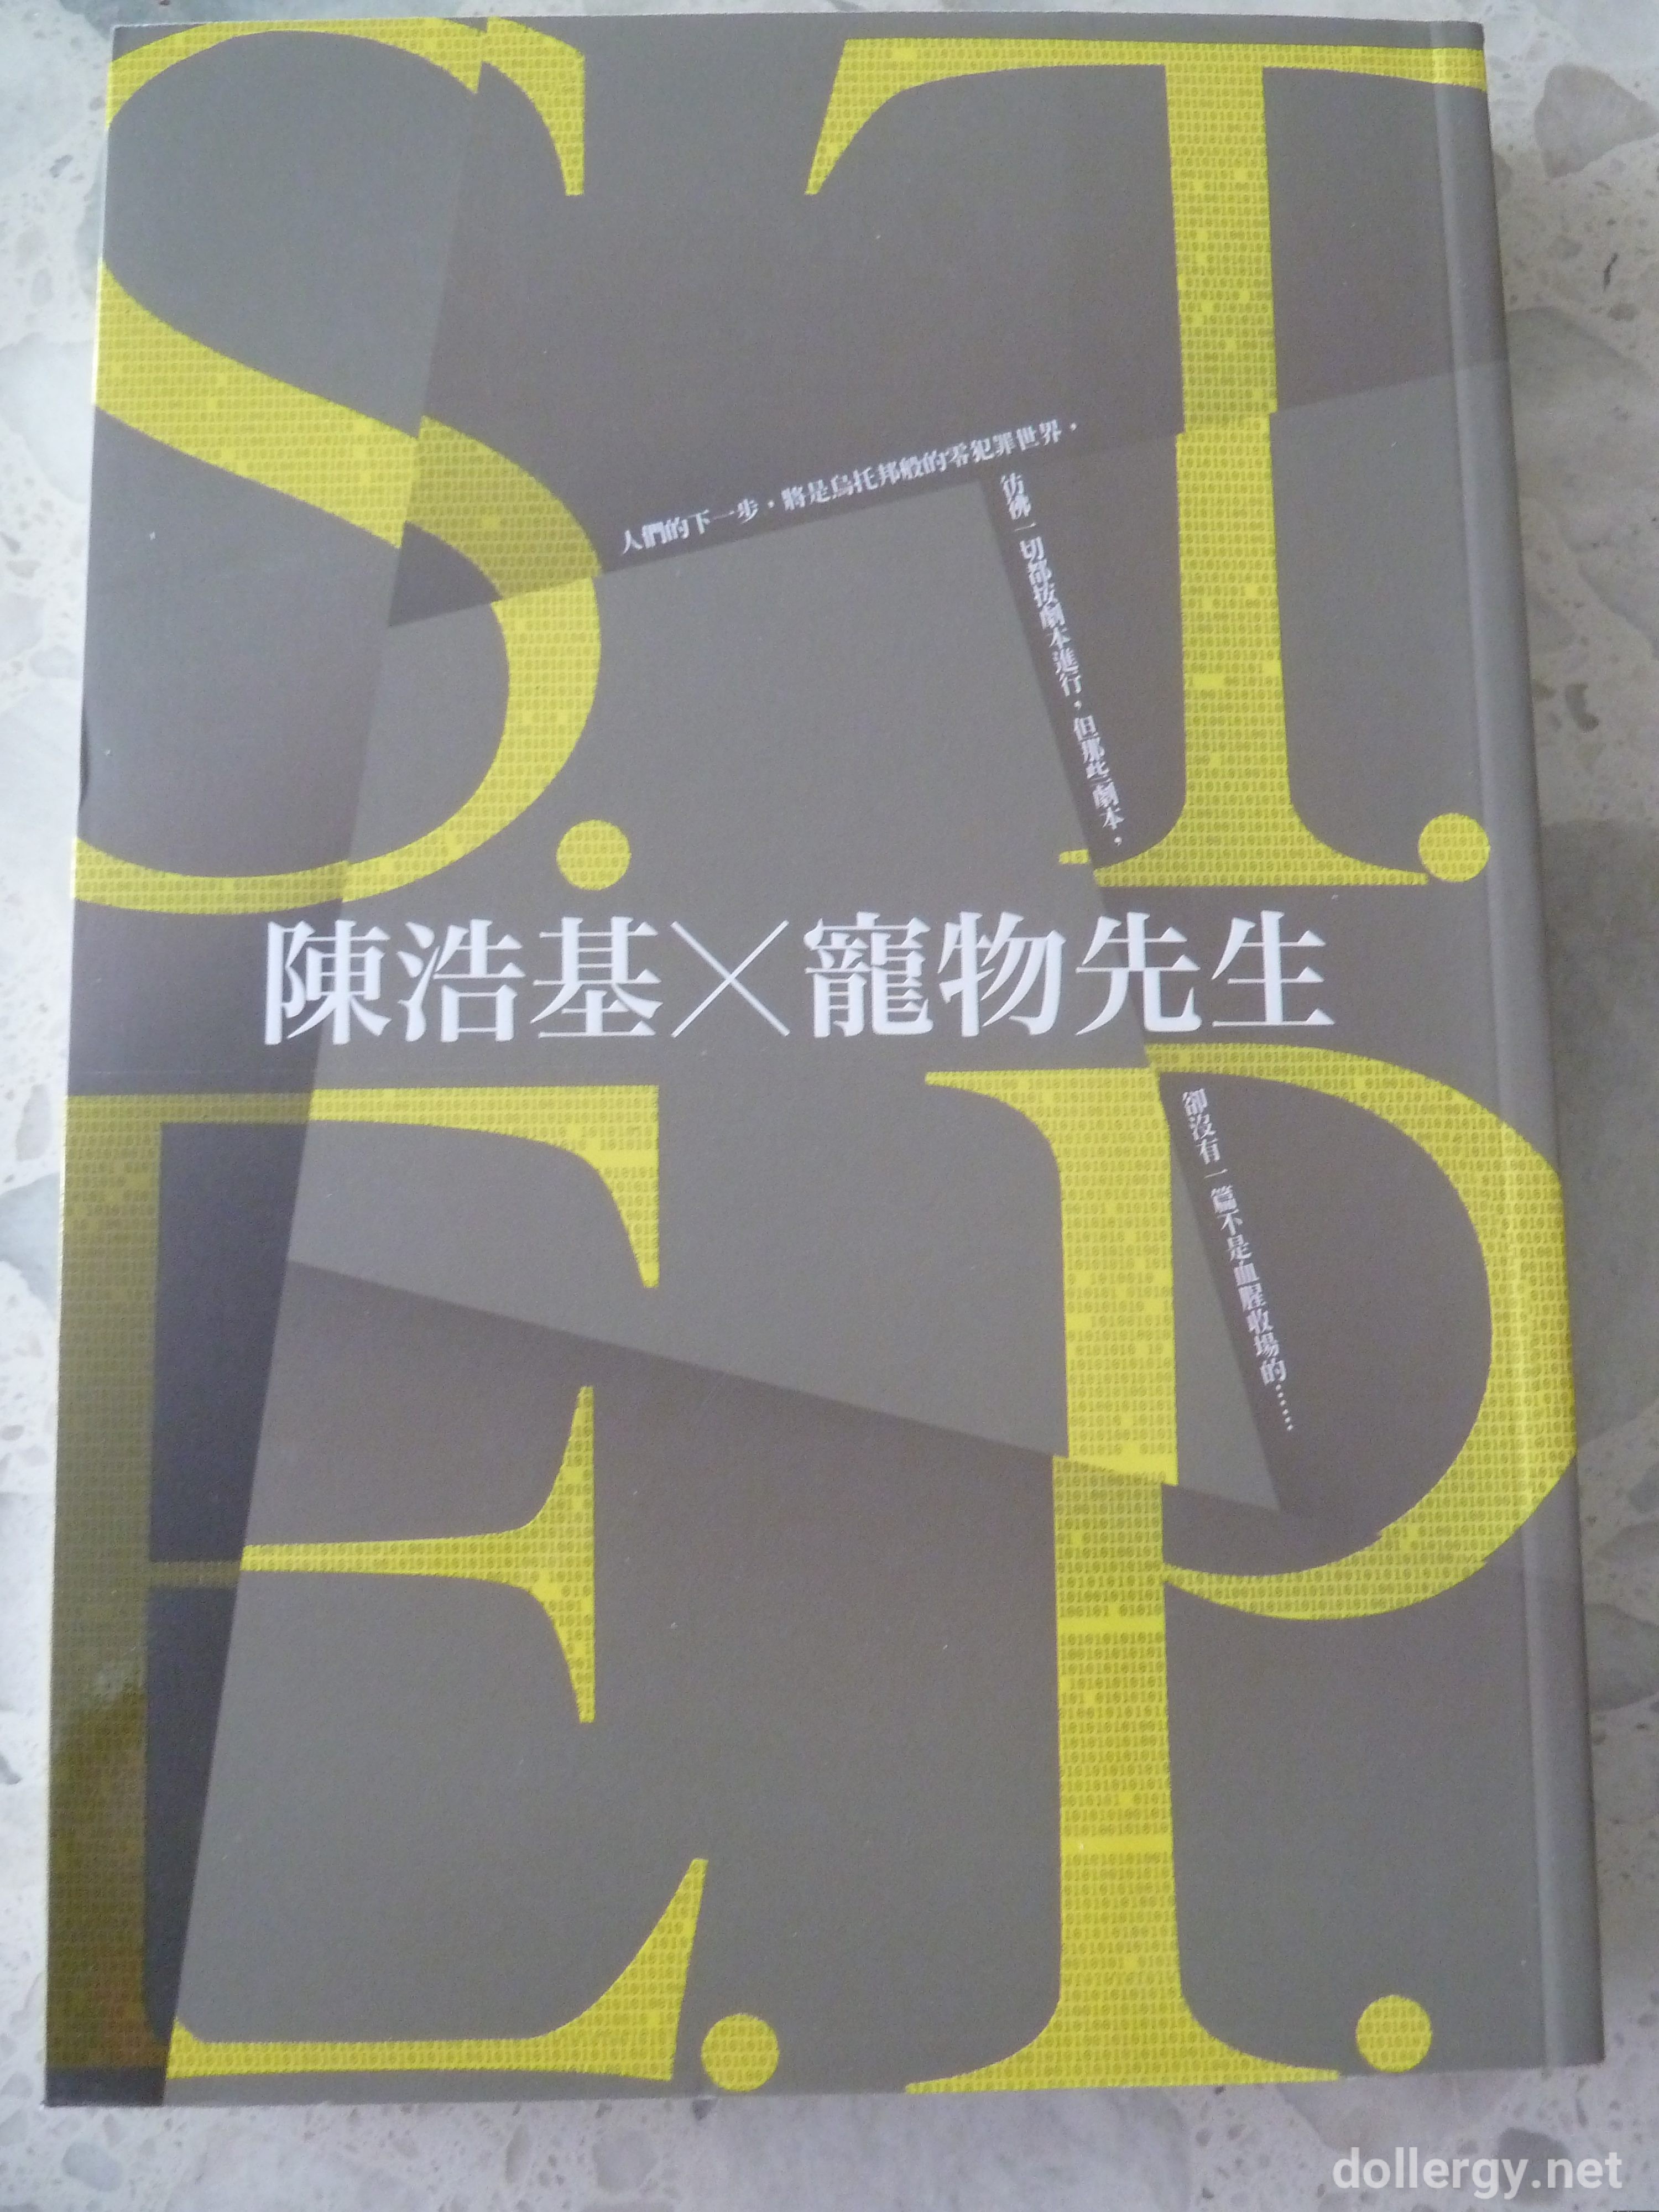 S.T.E.P. Book Cover